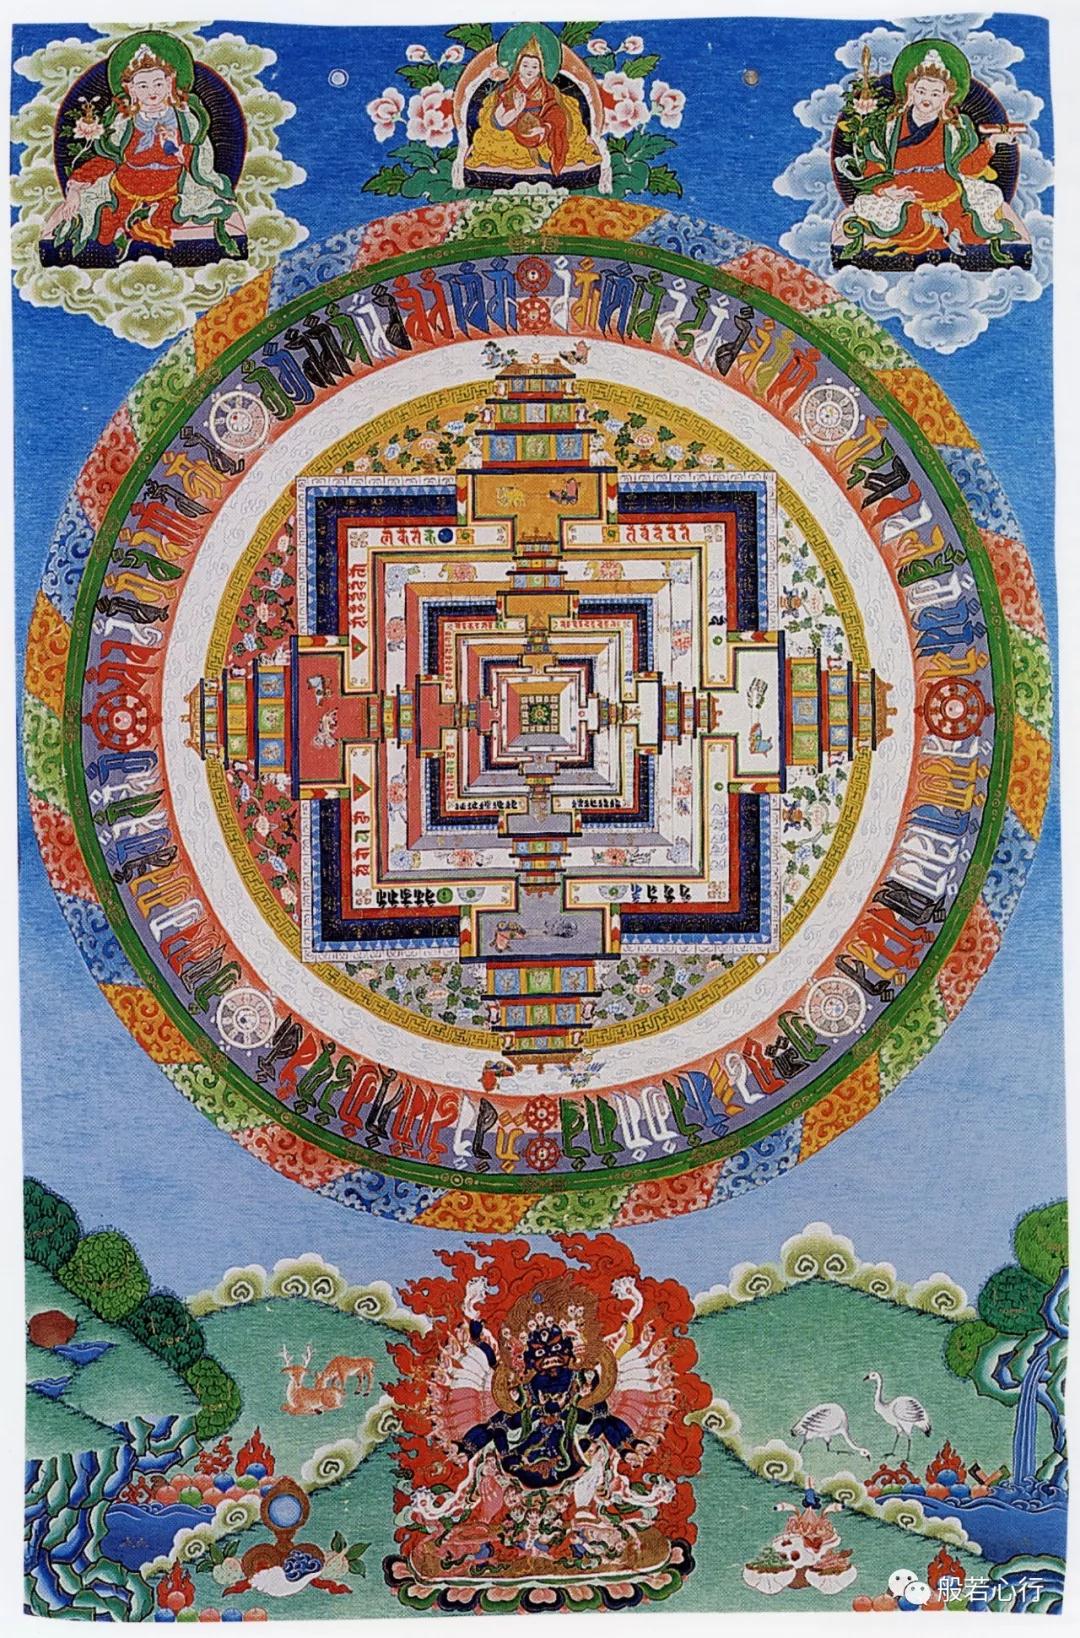 时轮金刚三昧耶曼荼罗 —《极乐之轮:佛教冥想艺术》